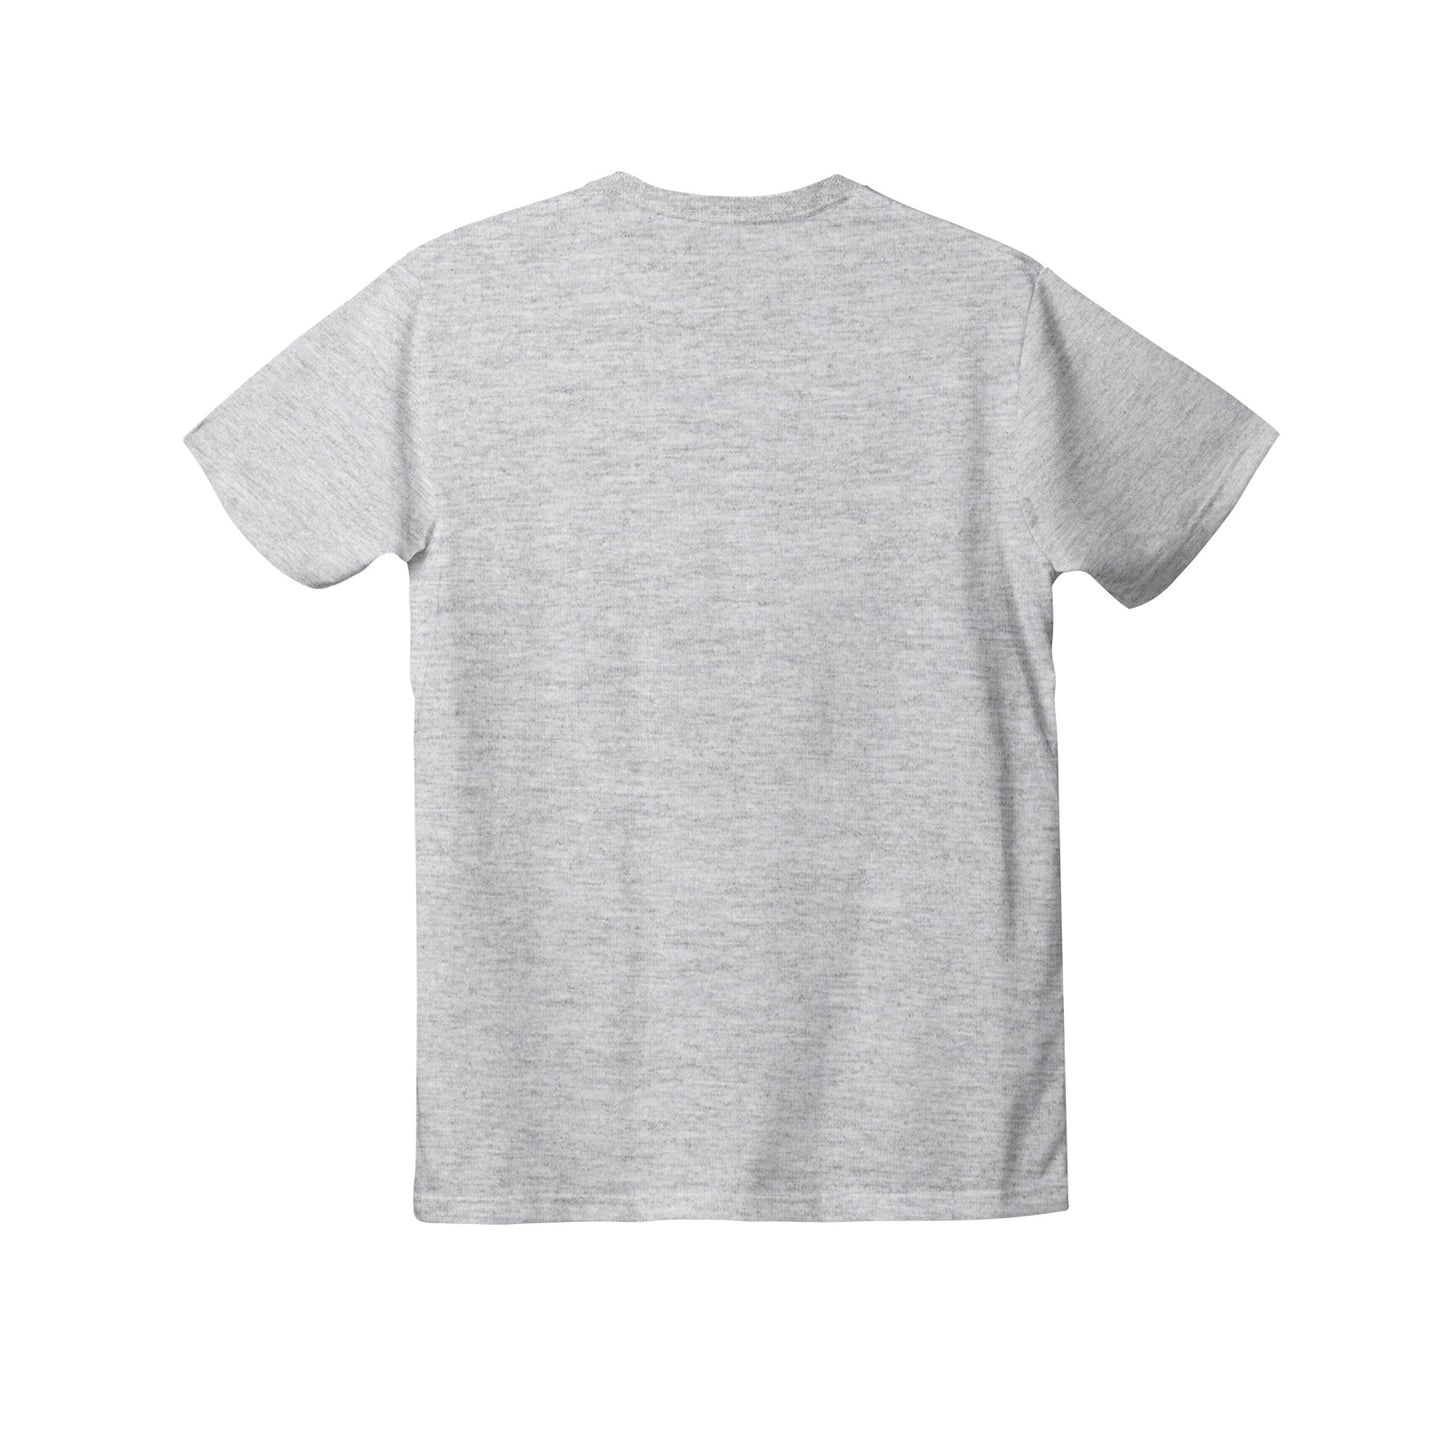 Women's Premium Cotton Adult T-Shirt